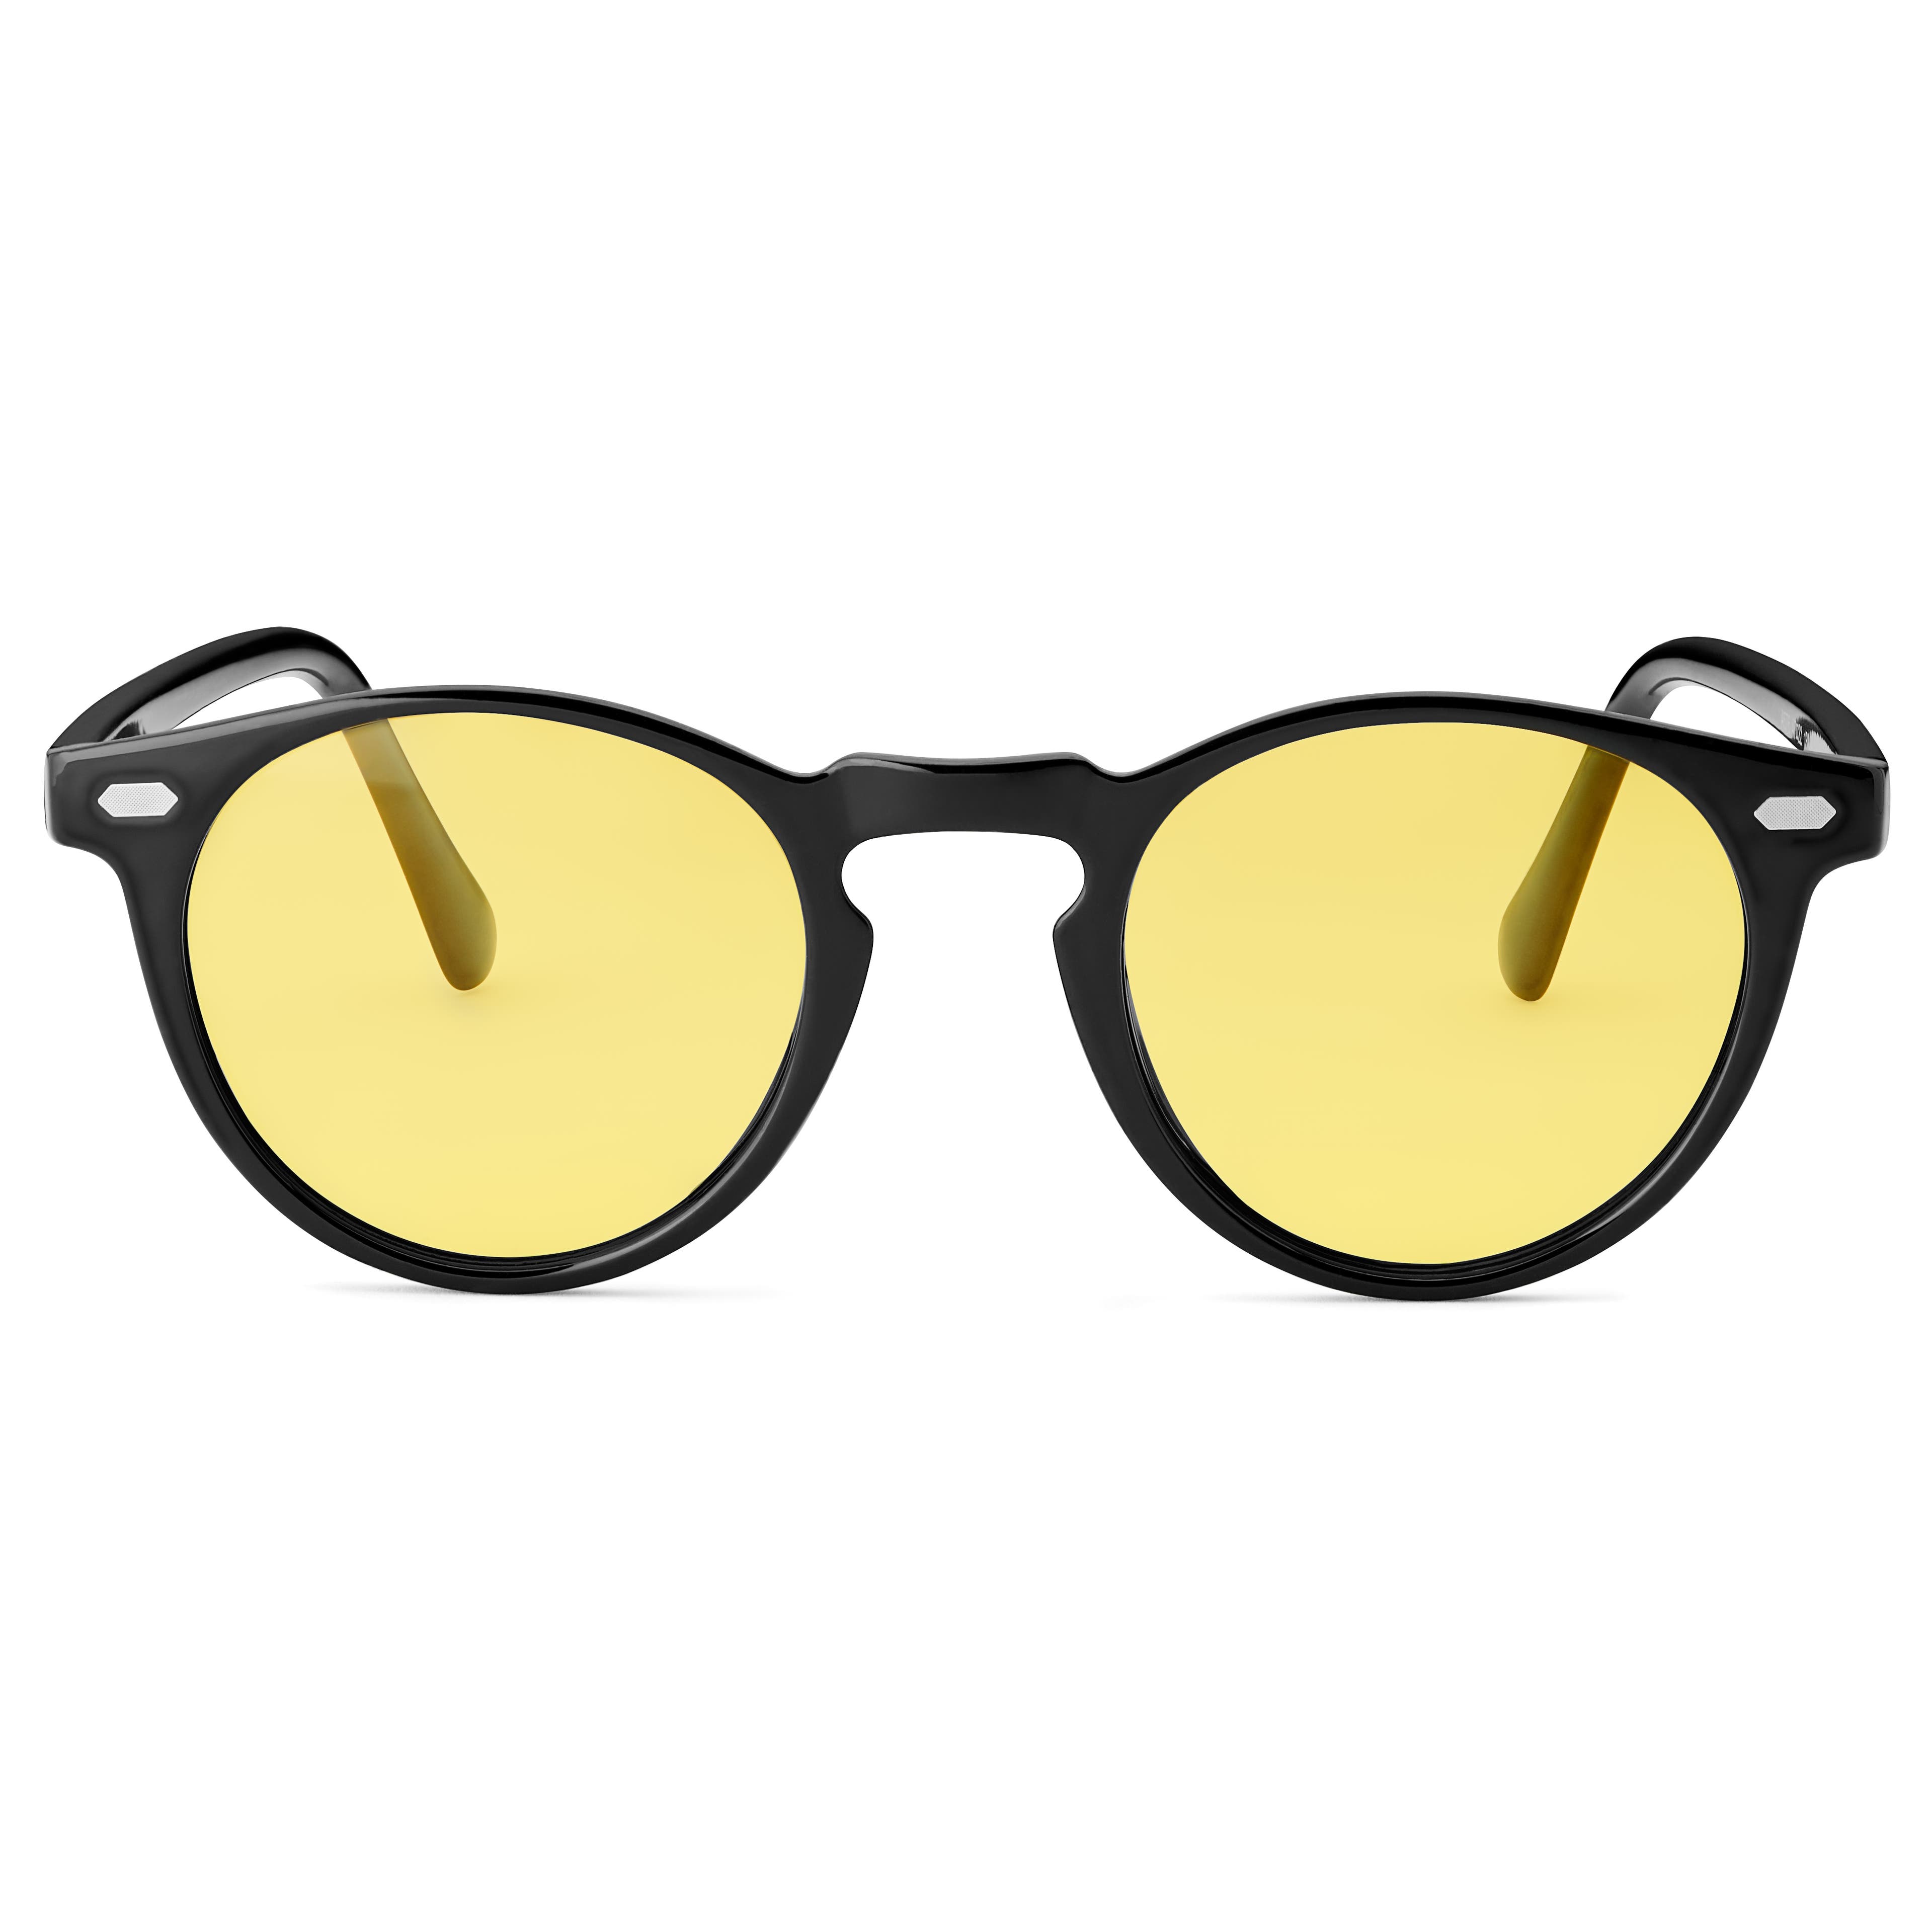 Czarno-żółte okrągłe polaryzacyjne okulary przeciwsłoneczne retro